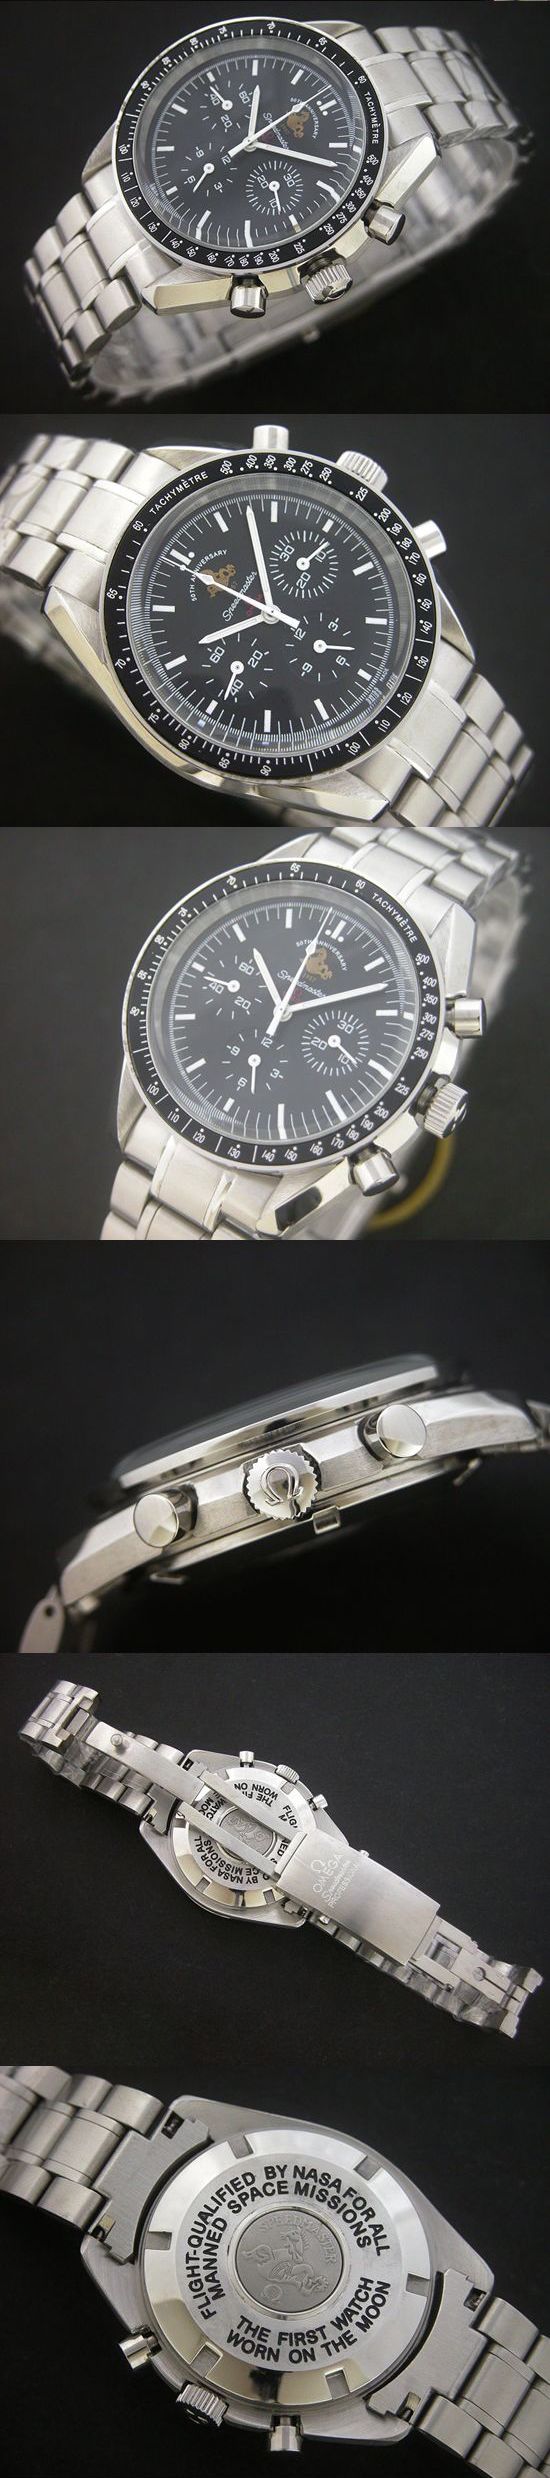 おしゃれなブランド時計がオメガ-スピードマスターOMEGA-3113.04.23- 50周年記念モデル-男性用を提供します.